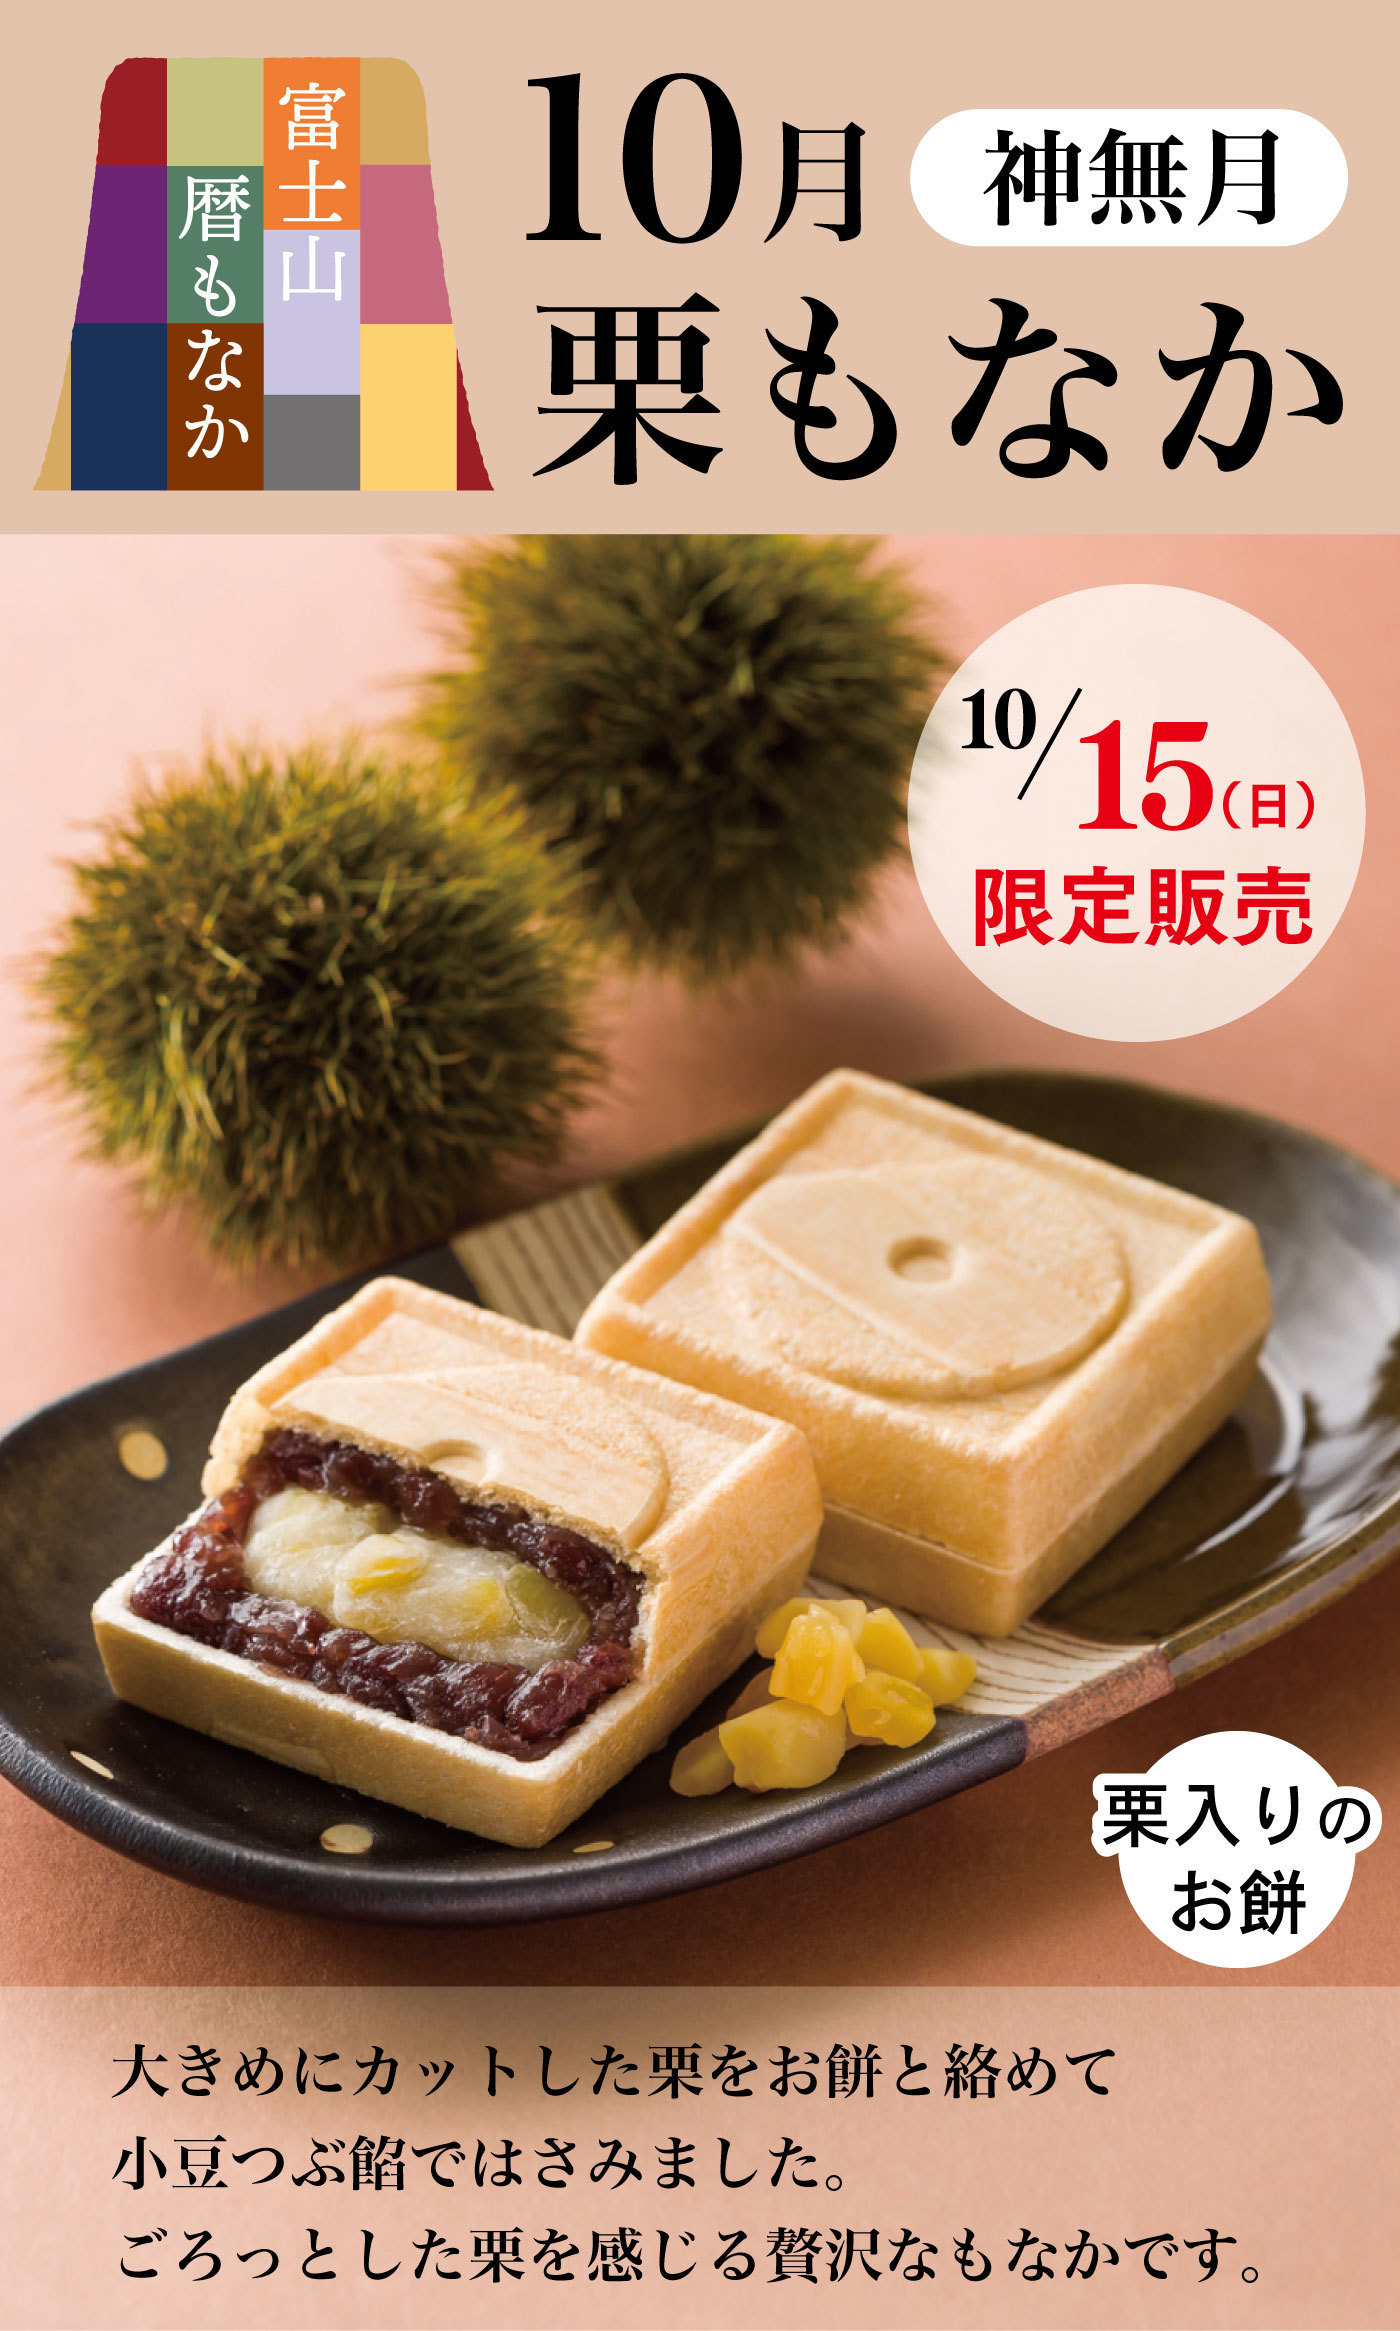 富士山暦もなか10月神無月栗もなか10/15(日)限定販売大きめにカットした栗をお餅と絡めて小豆つぶ餡ではさみました。ごろっとした栗を感じる贅沢なもなかです。